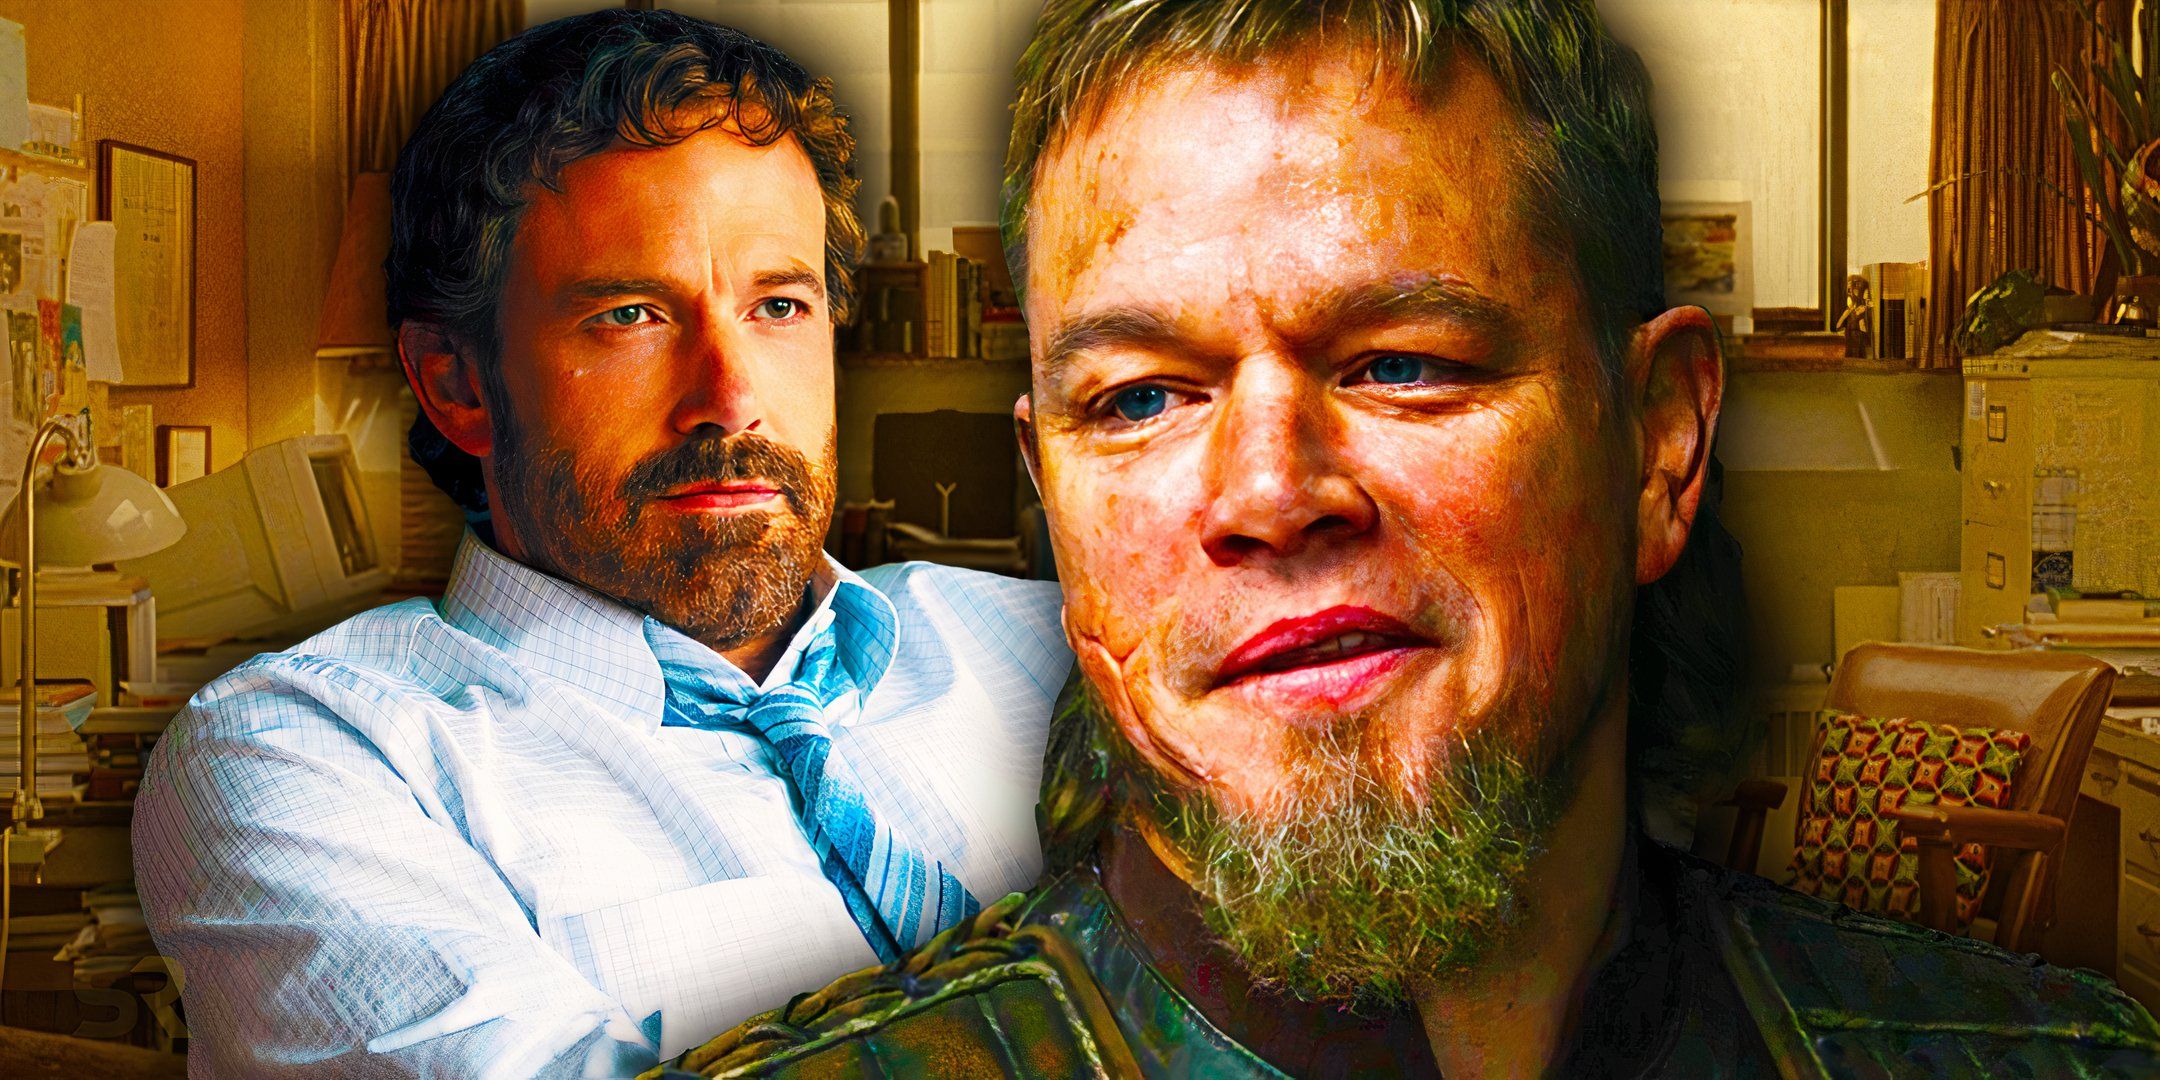 Las dos mejores colaboraciones de Ben Affleck y Matt Damon desde Good Will Hunting fueron fracasos de taquilla